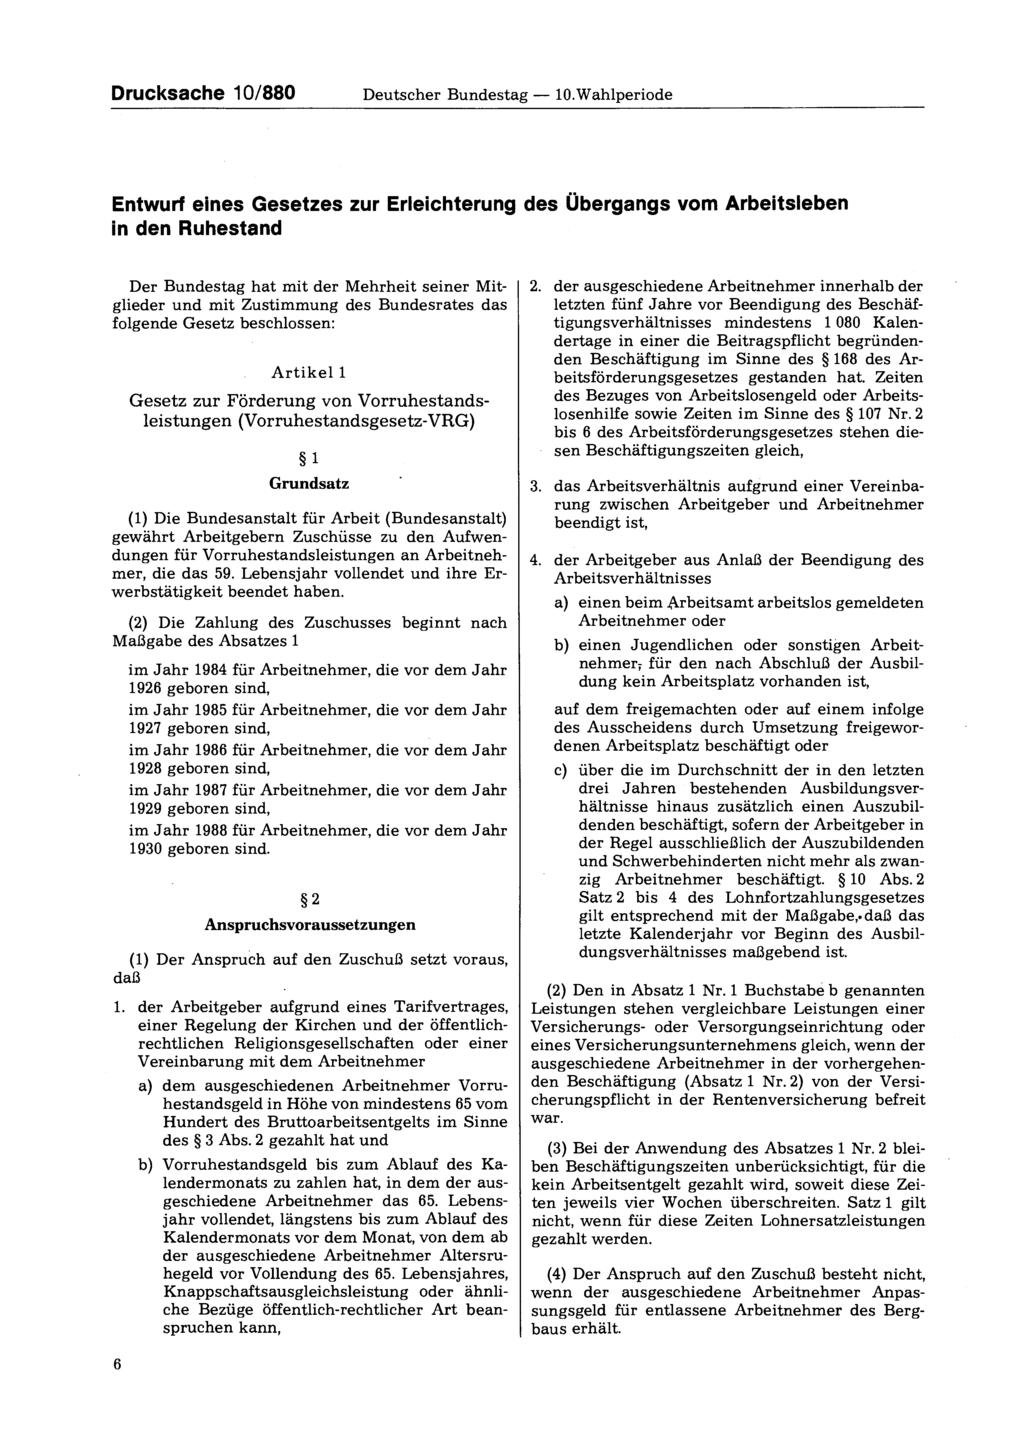 Drucksache 10/880 Deutscher Bundestag 10.